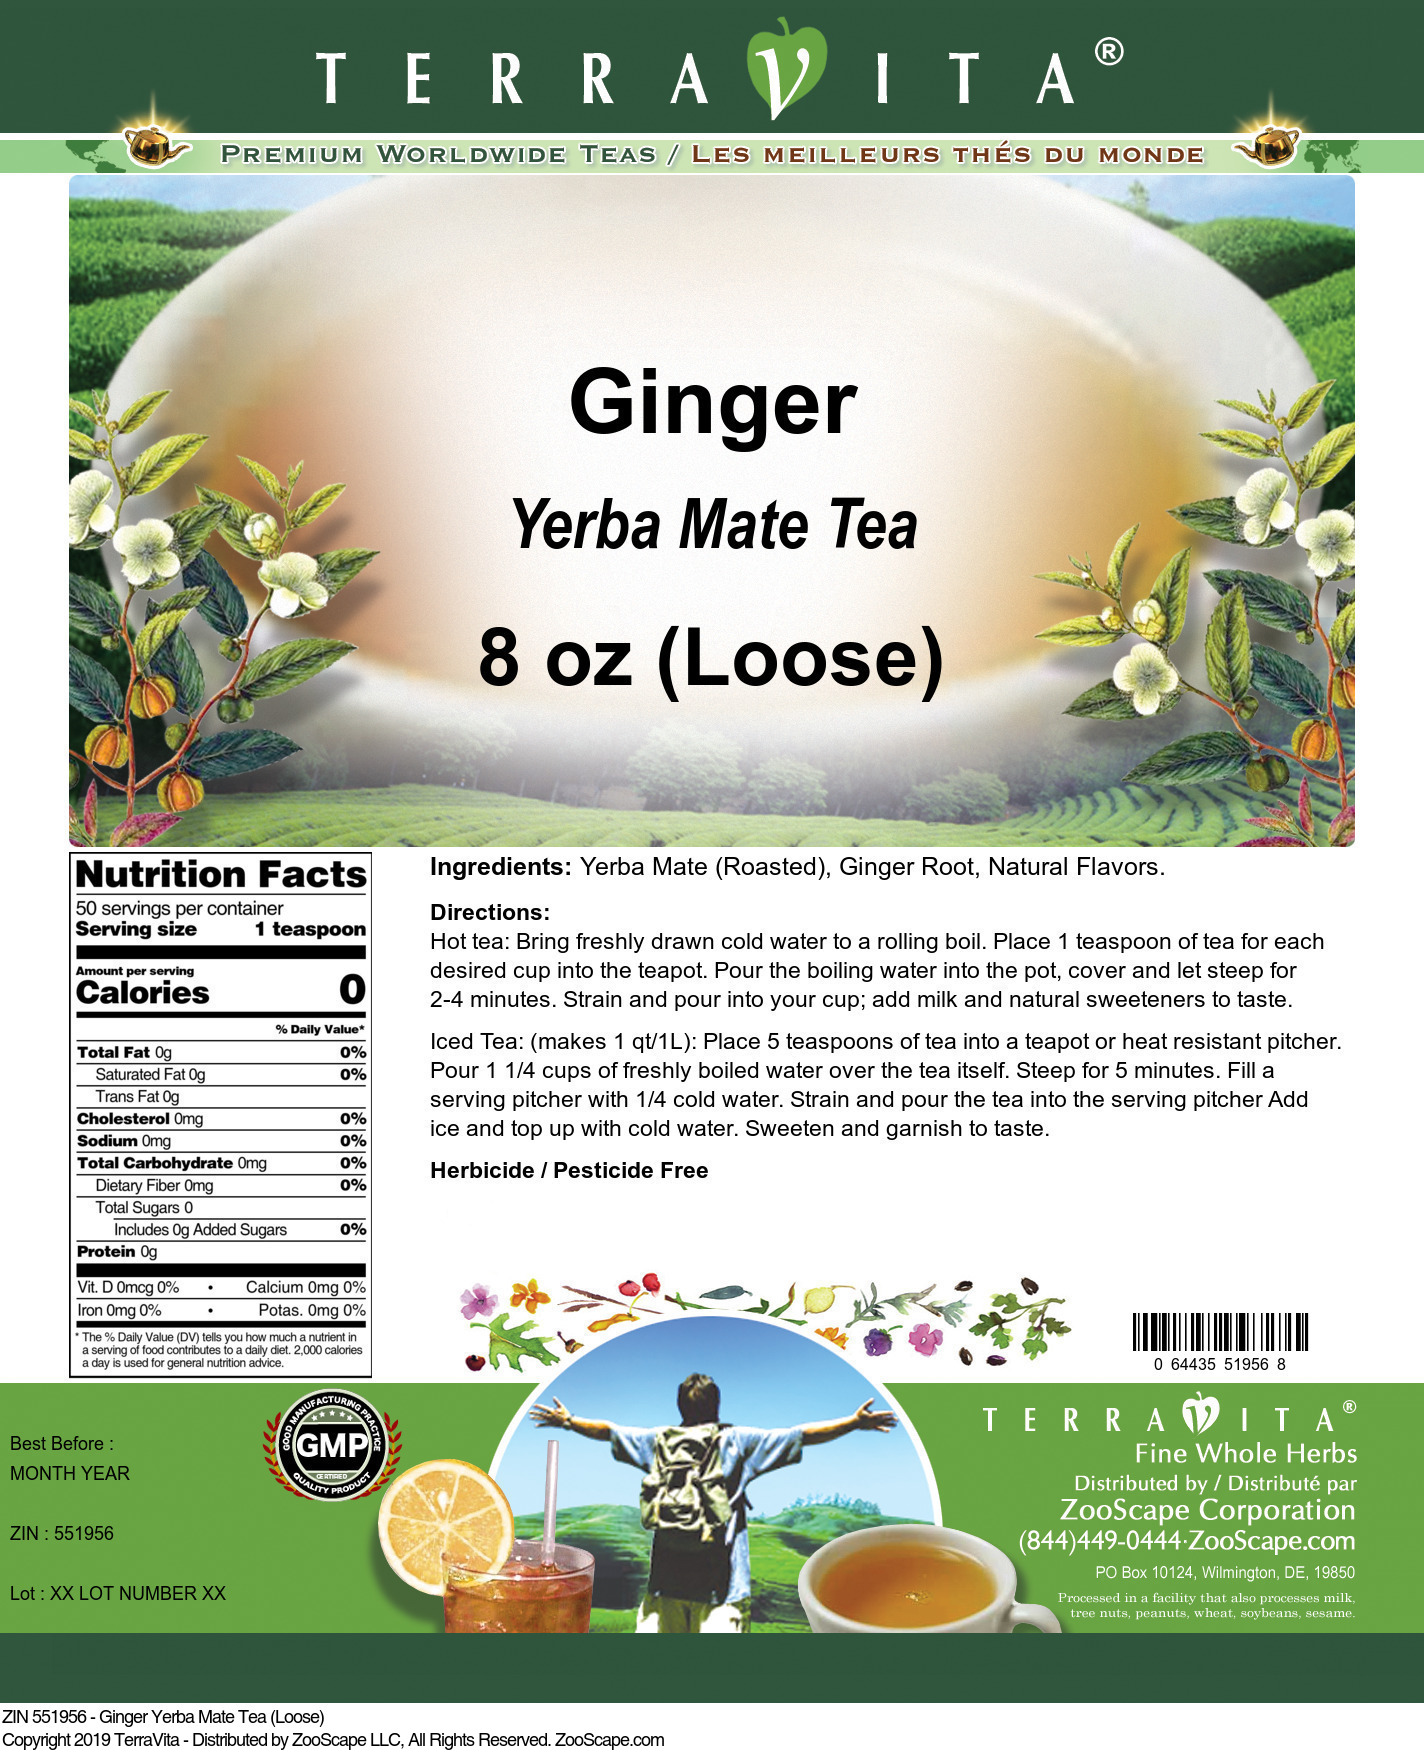 Ginger Yerba Mate Tea (Loose) - Label